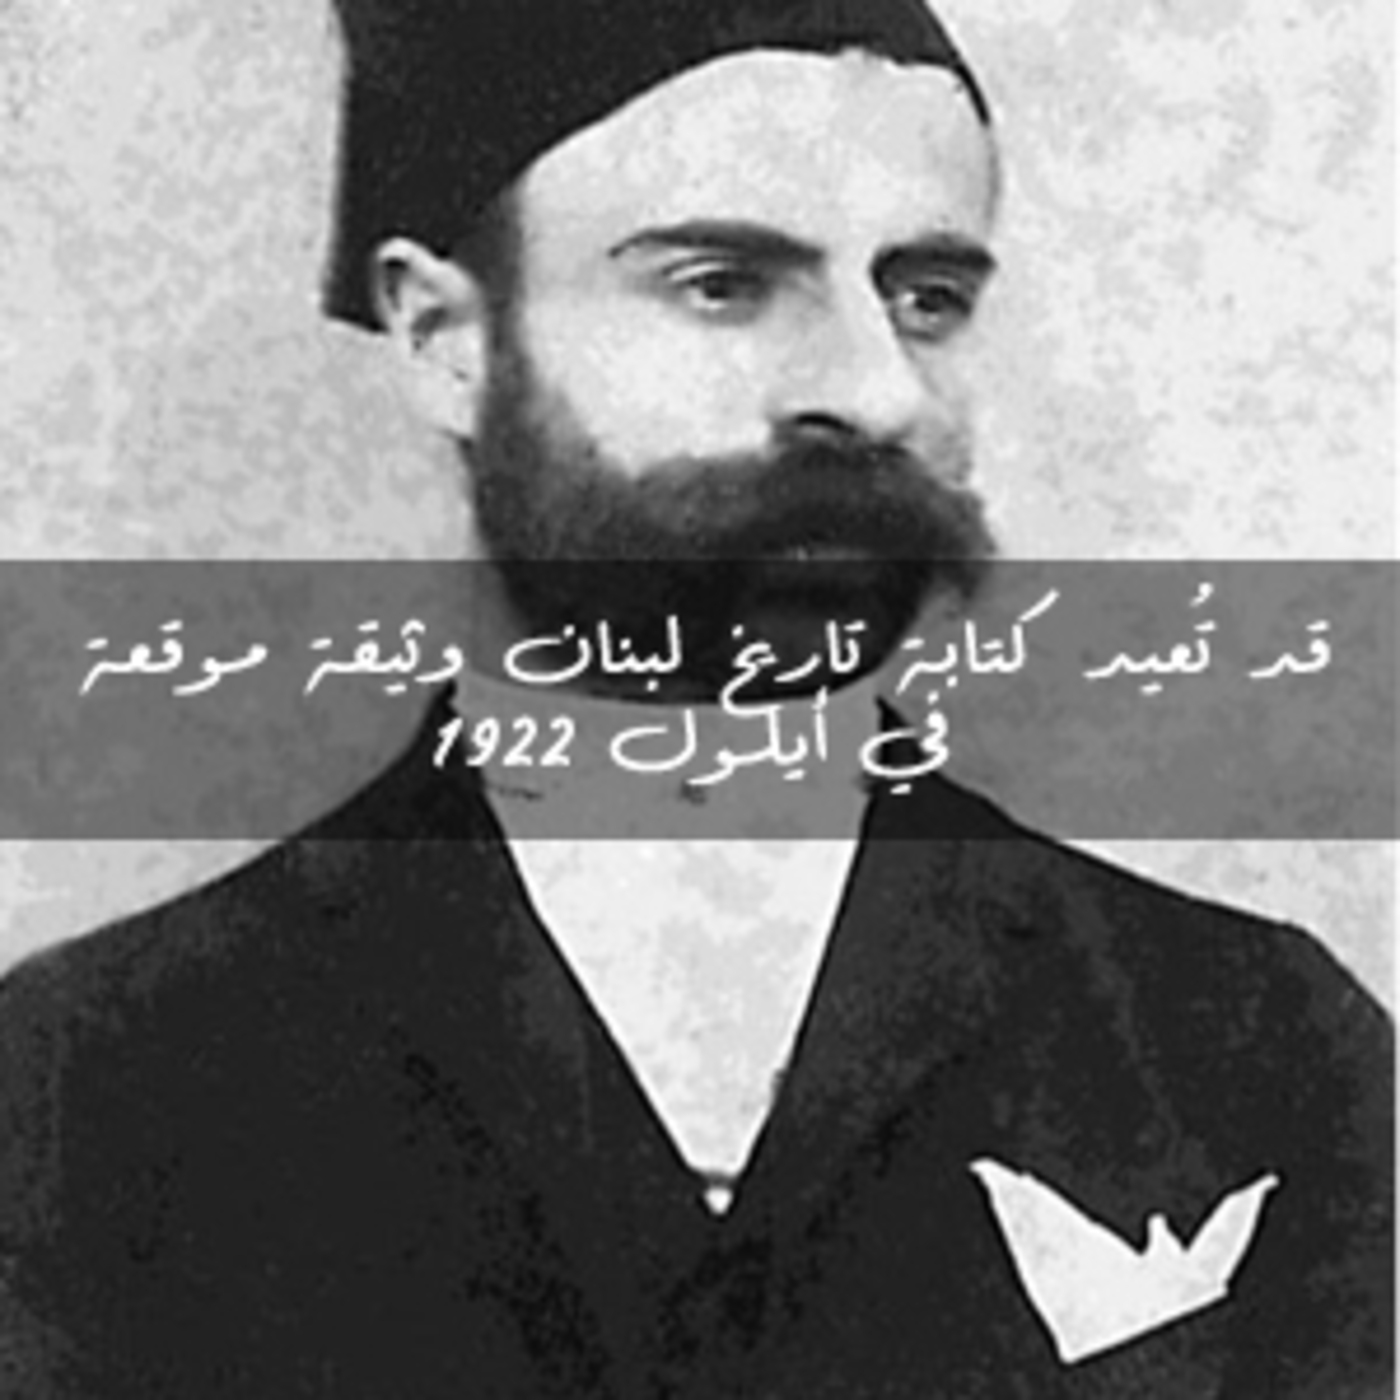  قد تُعيد كتابة تاريخ لبنان (الحلقة الثالثة) وثيقة موقعة في أيلول 1922